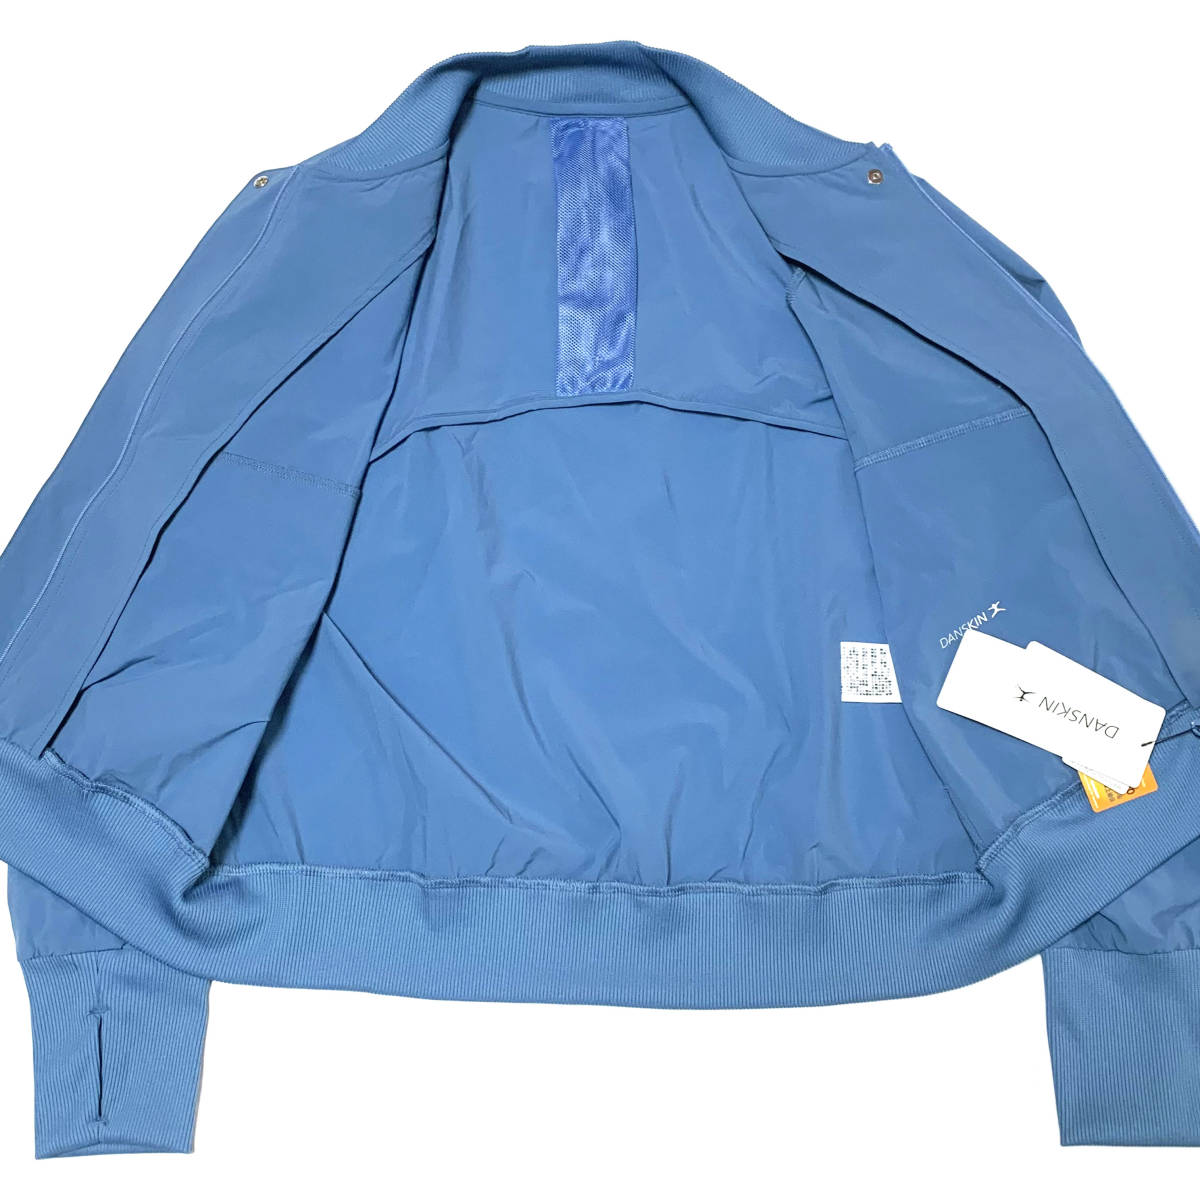 新品 Mサイズ ダンスキン レディース オディールライト ジャケット ブルー DANSKIN UVケア DC30303 ジム フィットネス ウェア DC30303 青